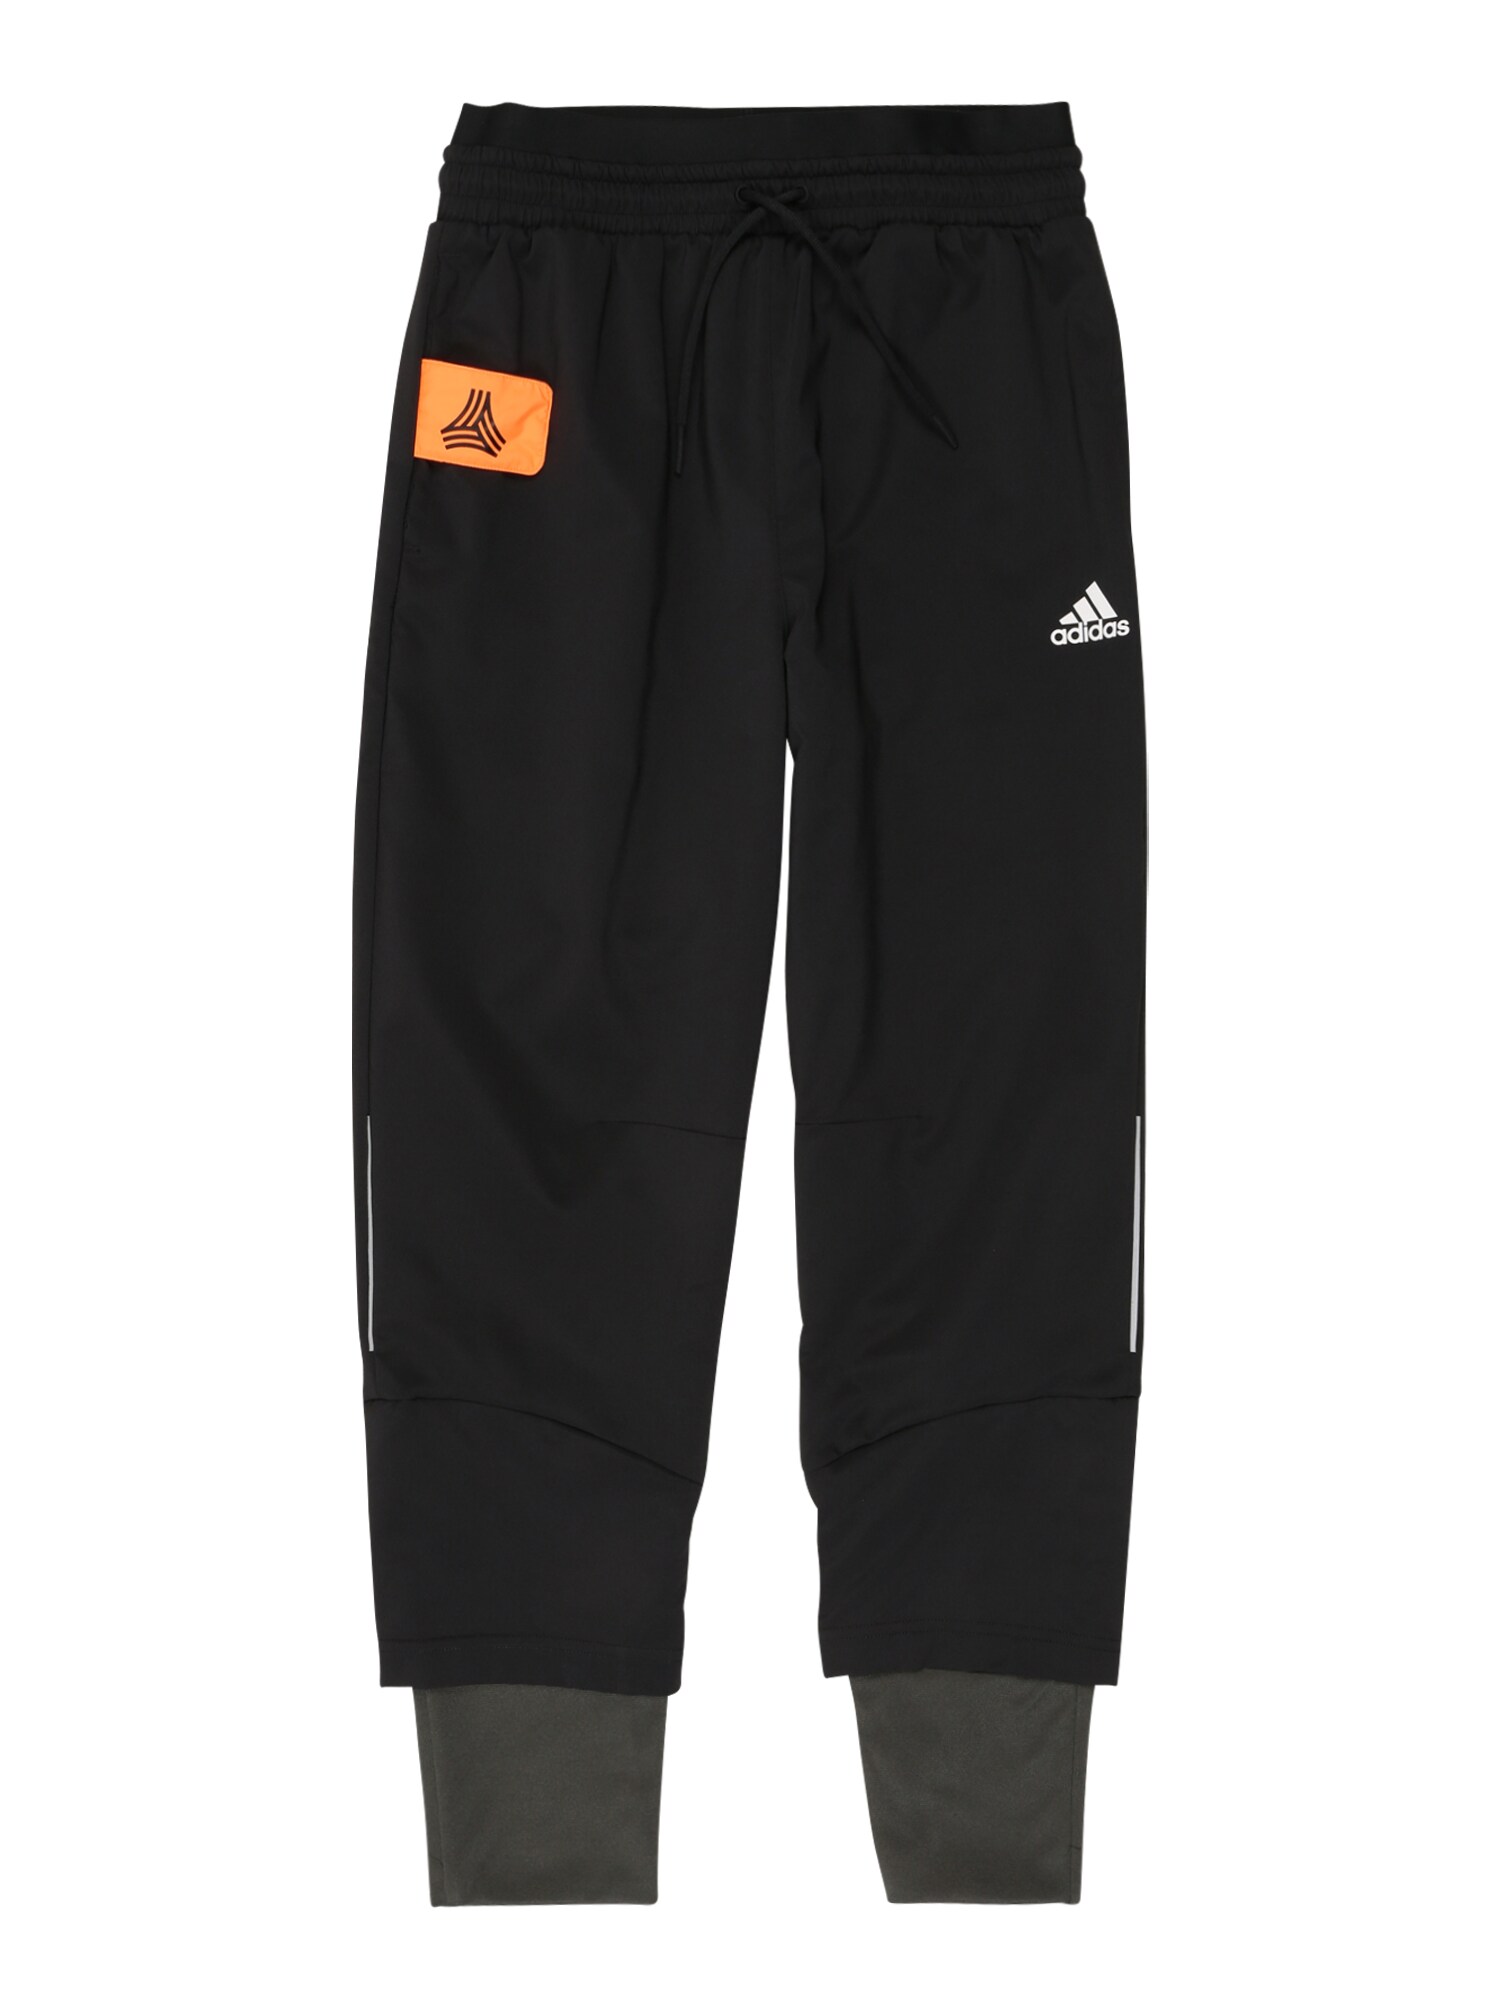 ADIDAS PERFORMANCE Sportinės kelnės  juoda / balta / oranžinė